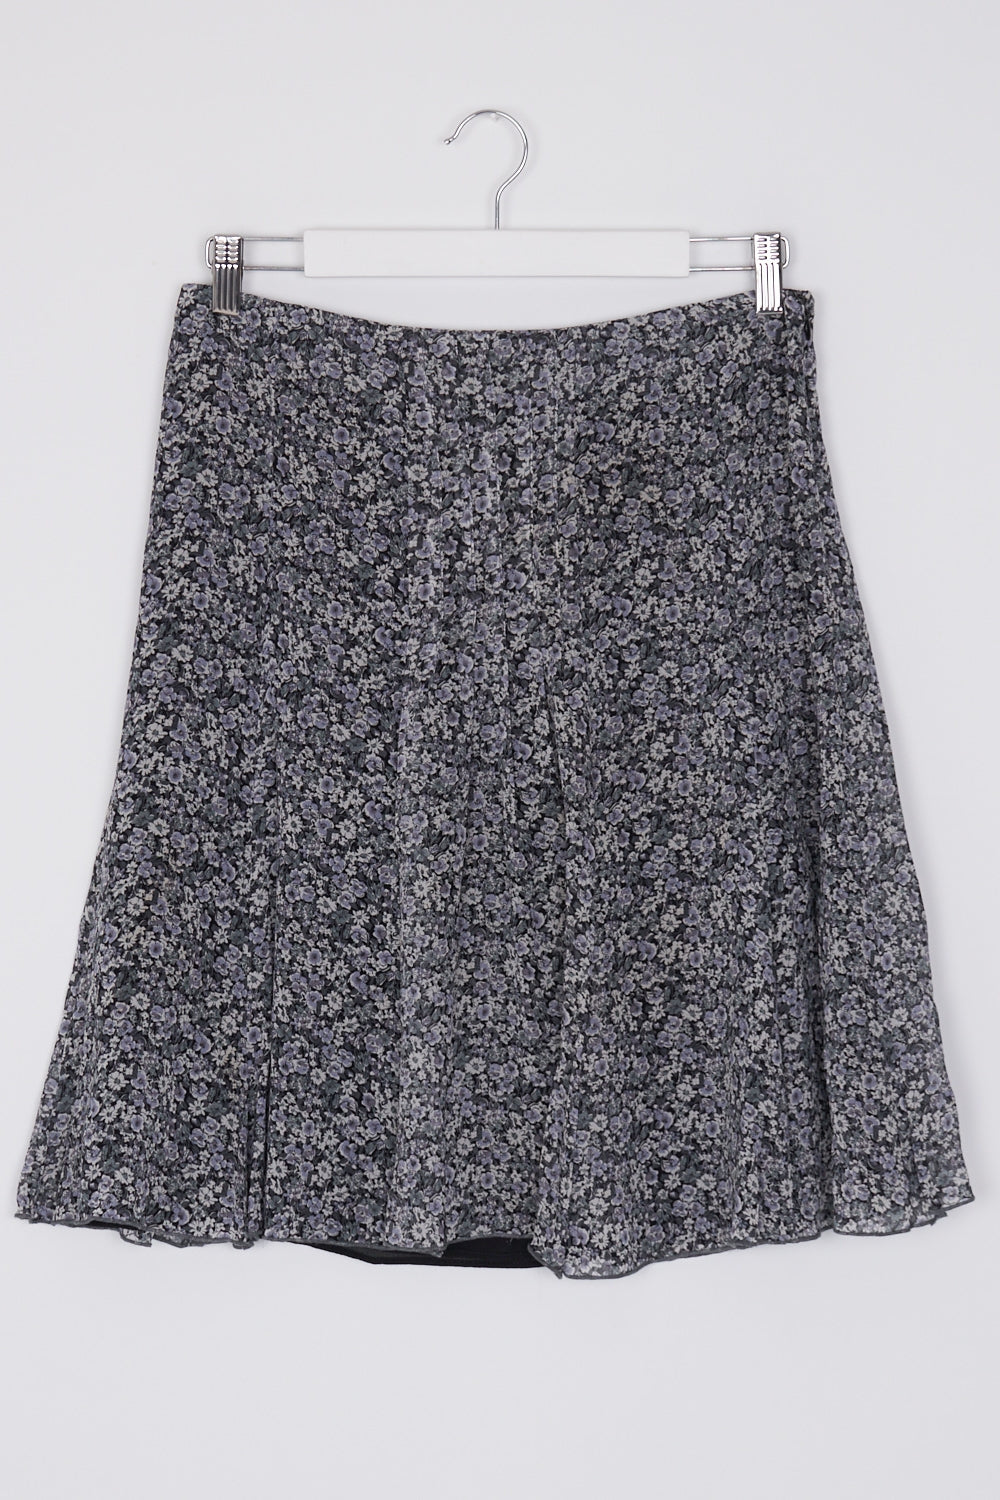 Caroll Blue Floral Silk Skirt 12